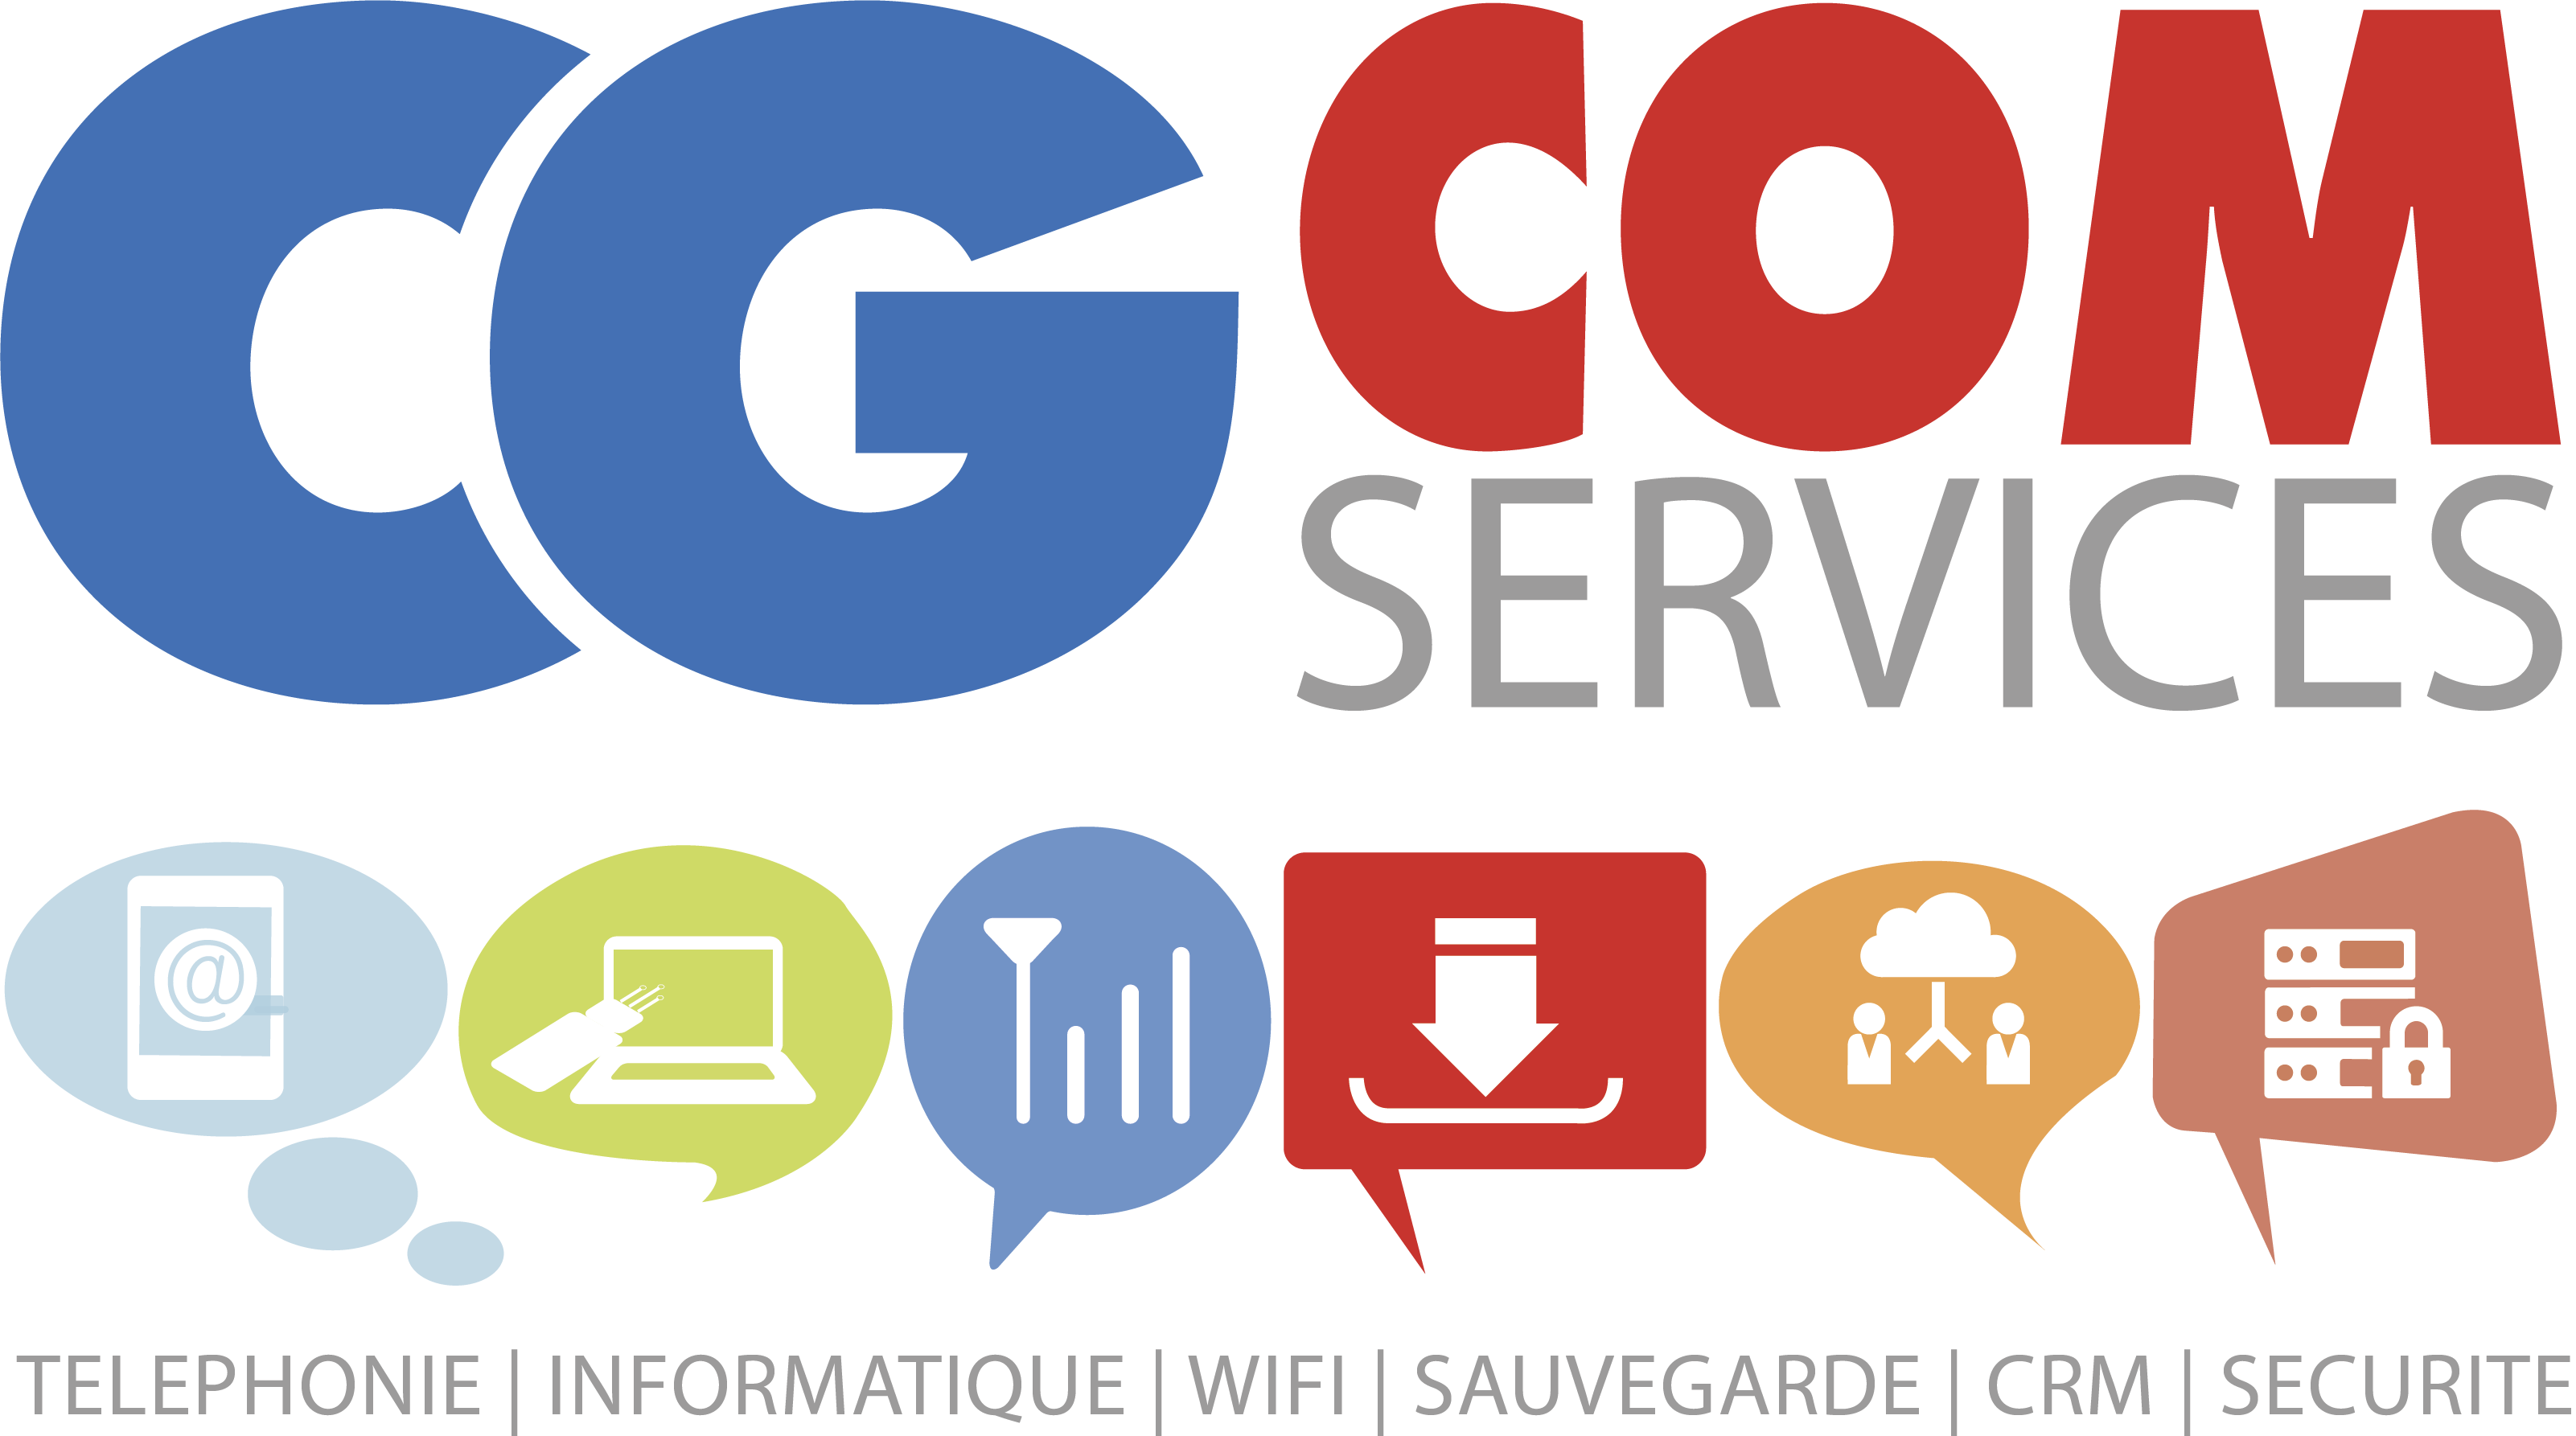 CGCom Services